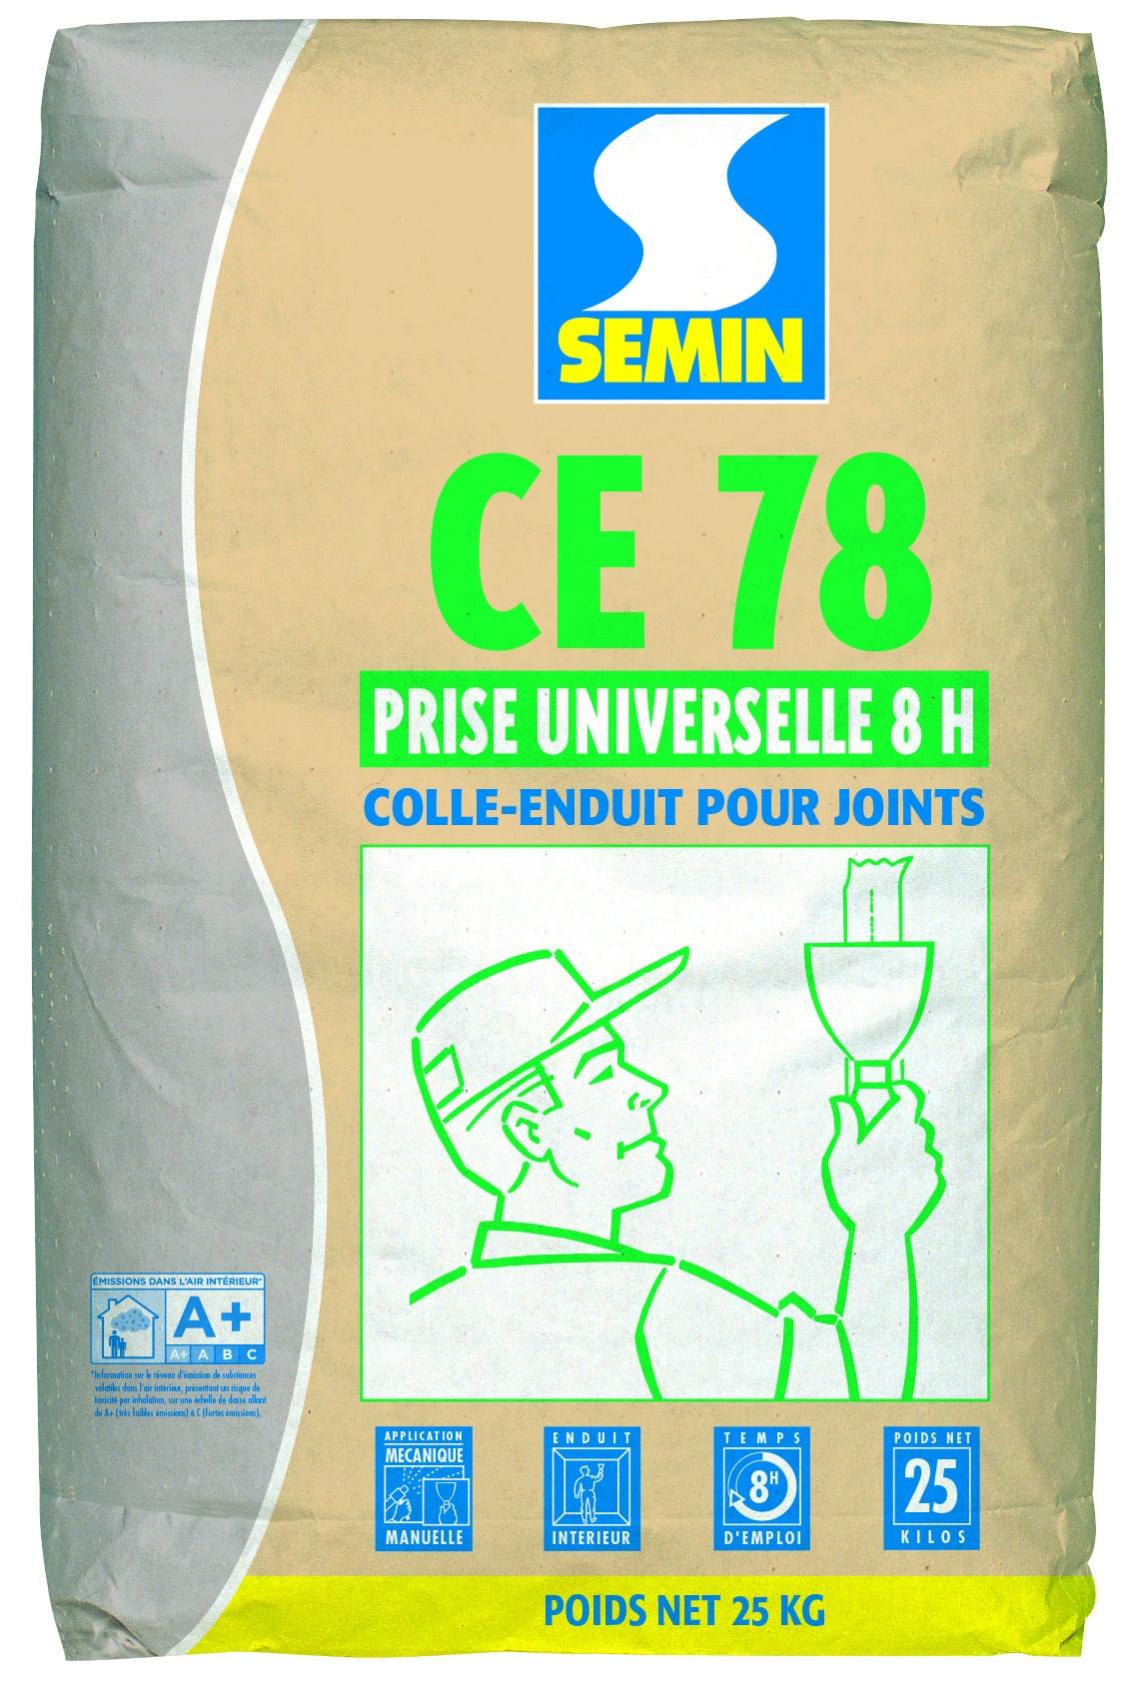 Enduit pour joints CE 78, prise universelle 8h, palette 25 sacs